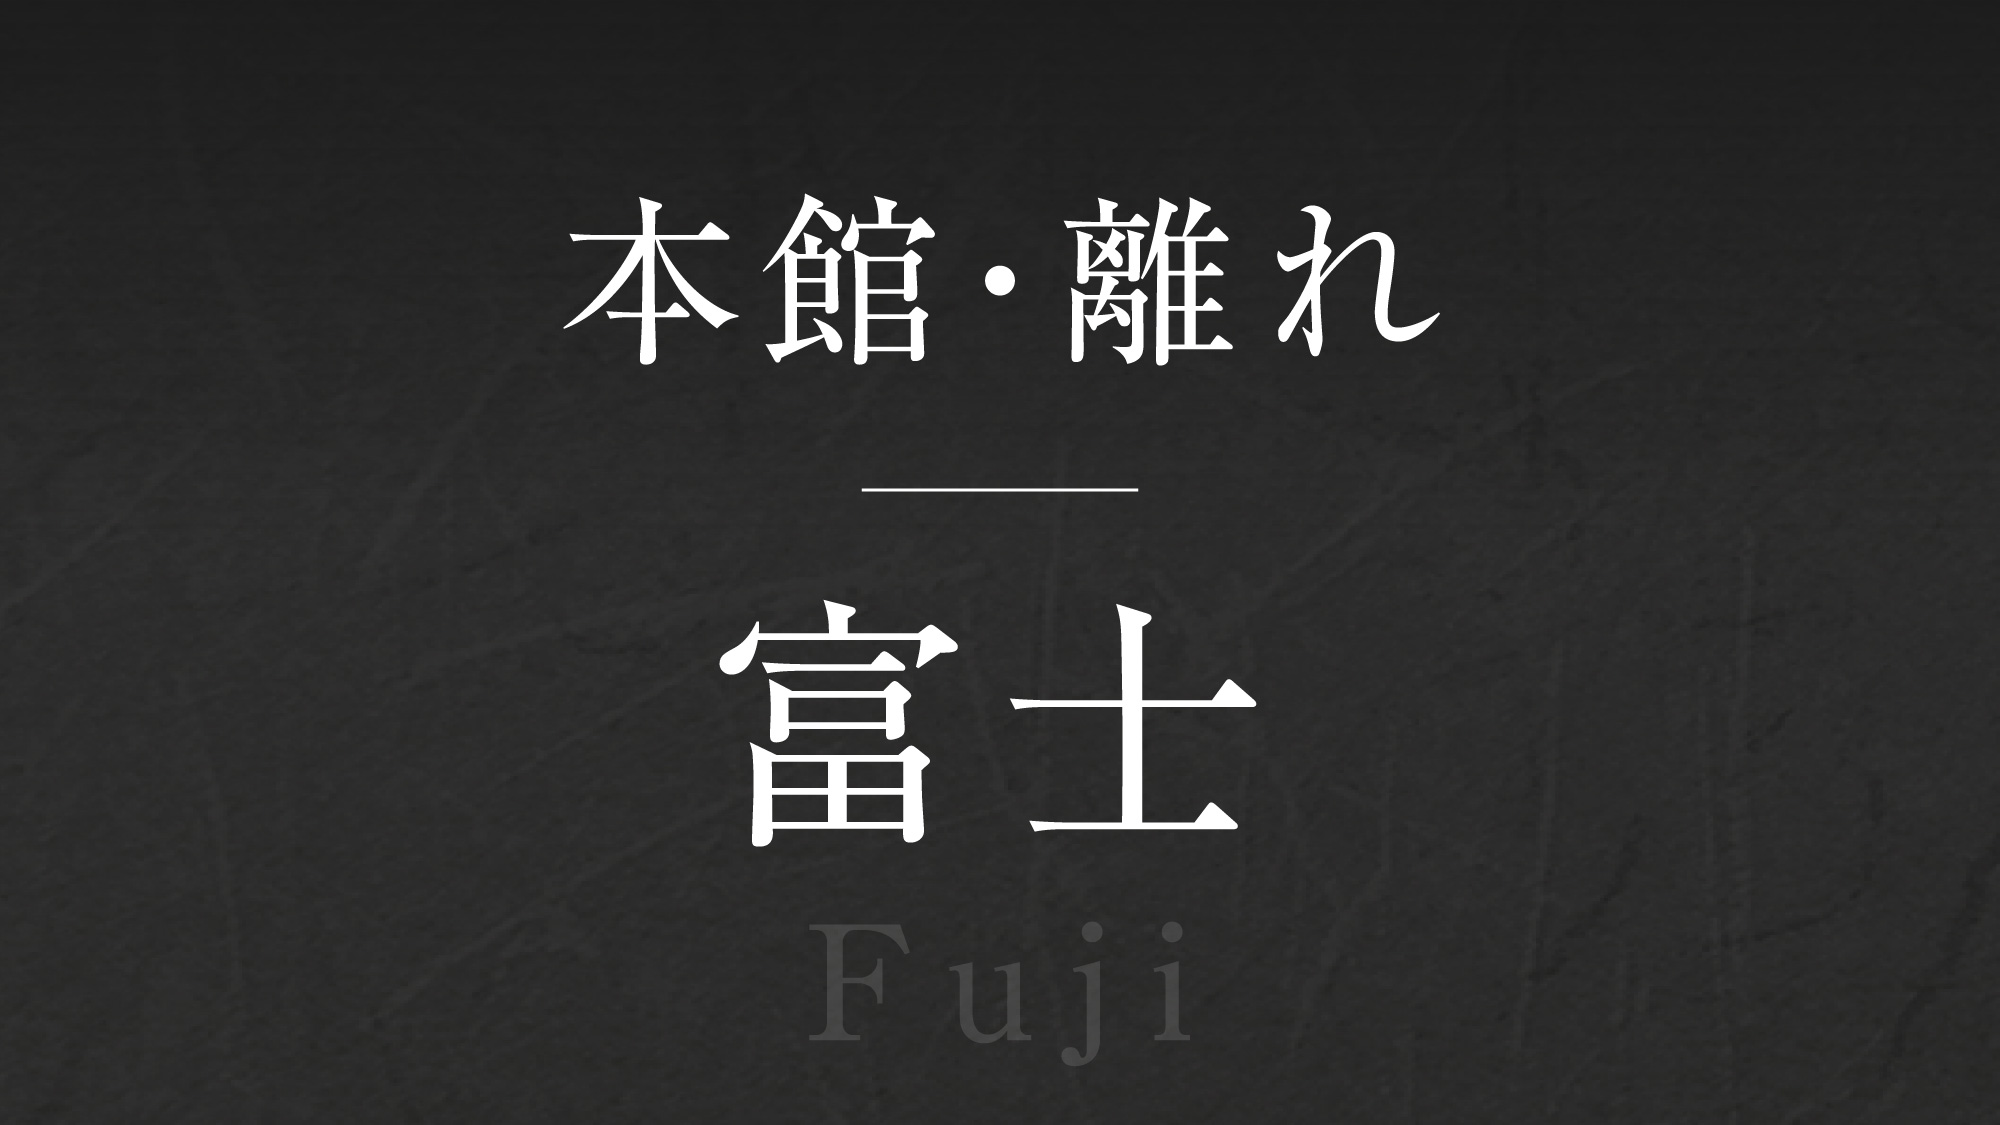 【富士】‐Fuji‐  